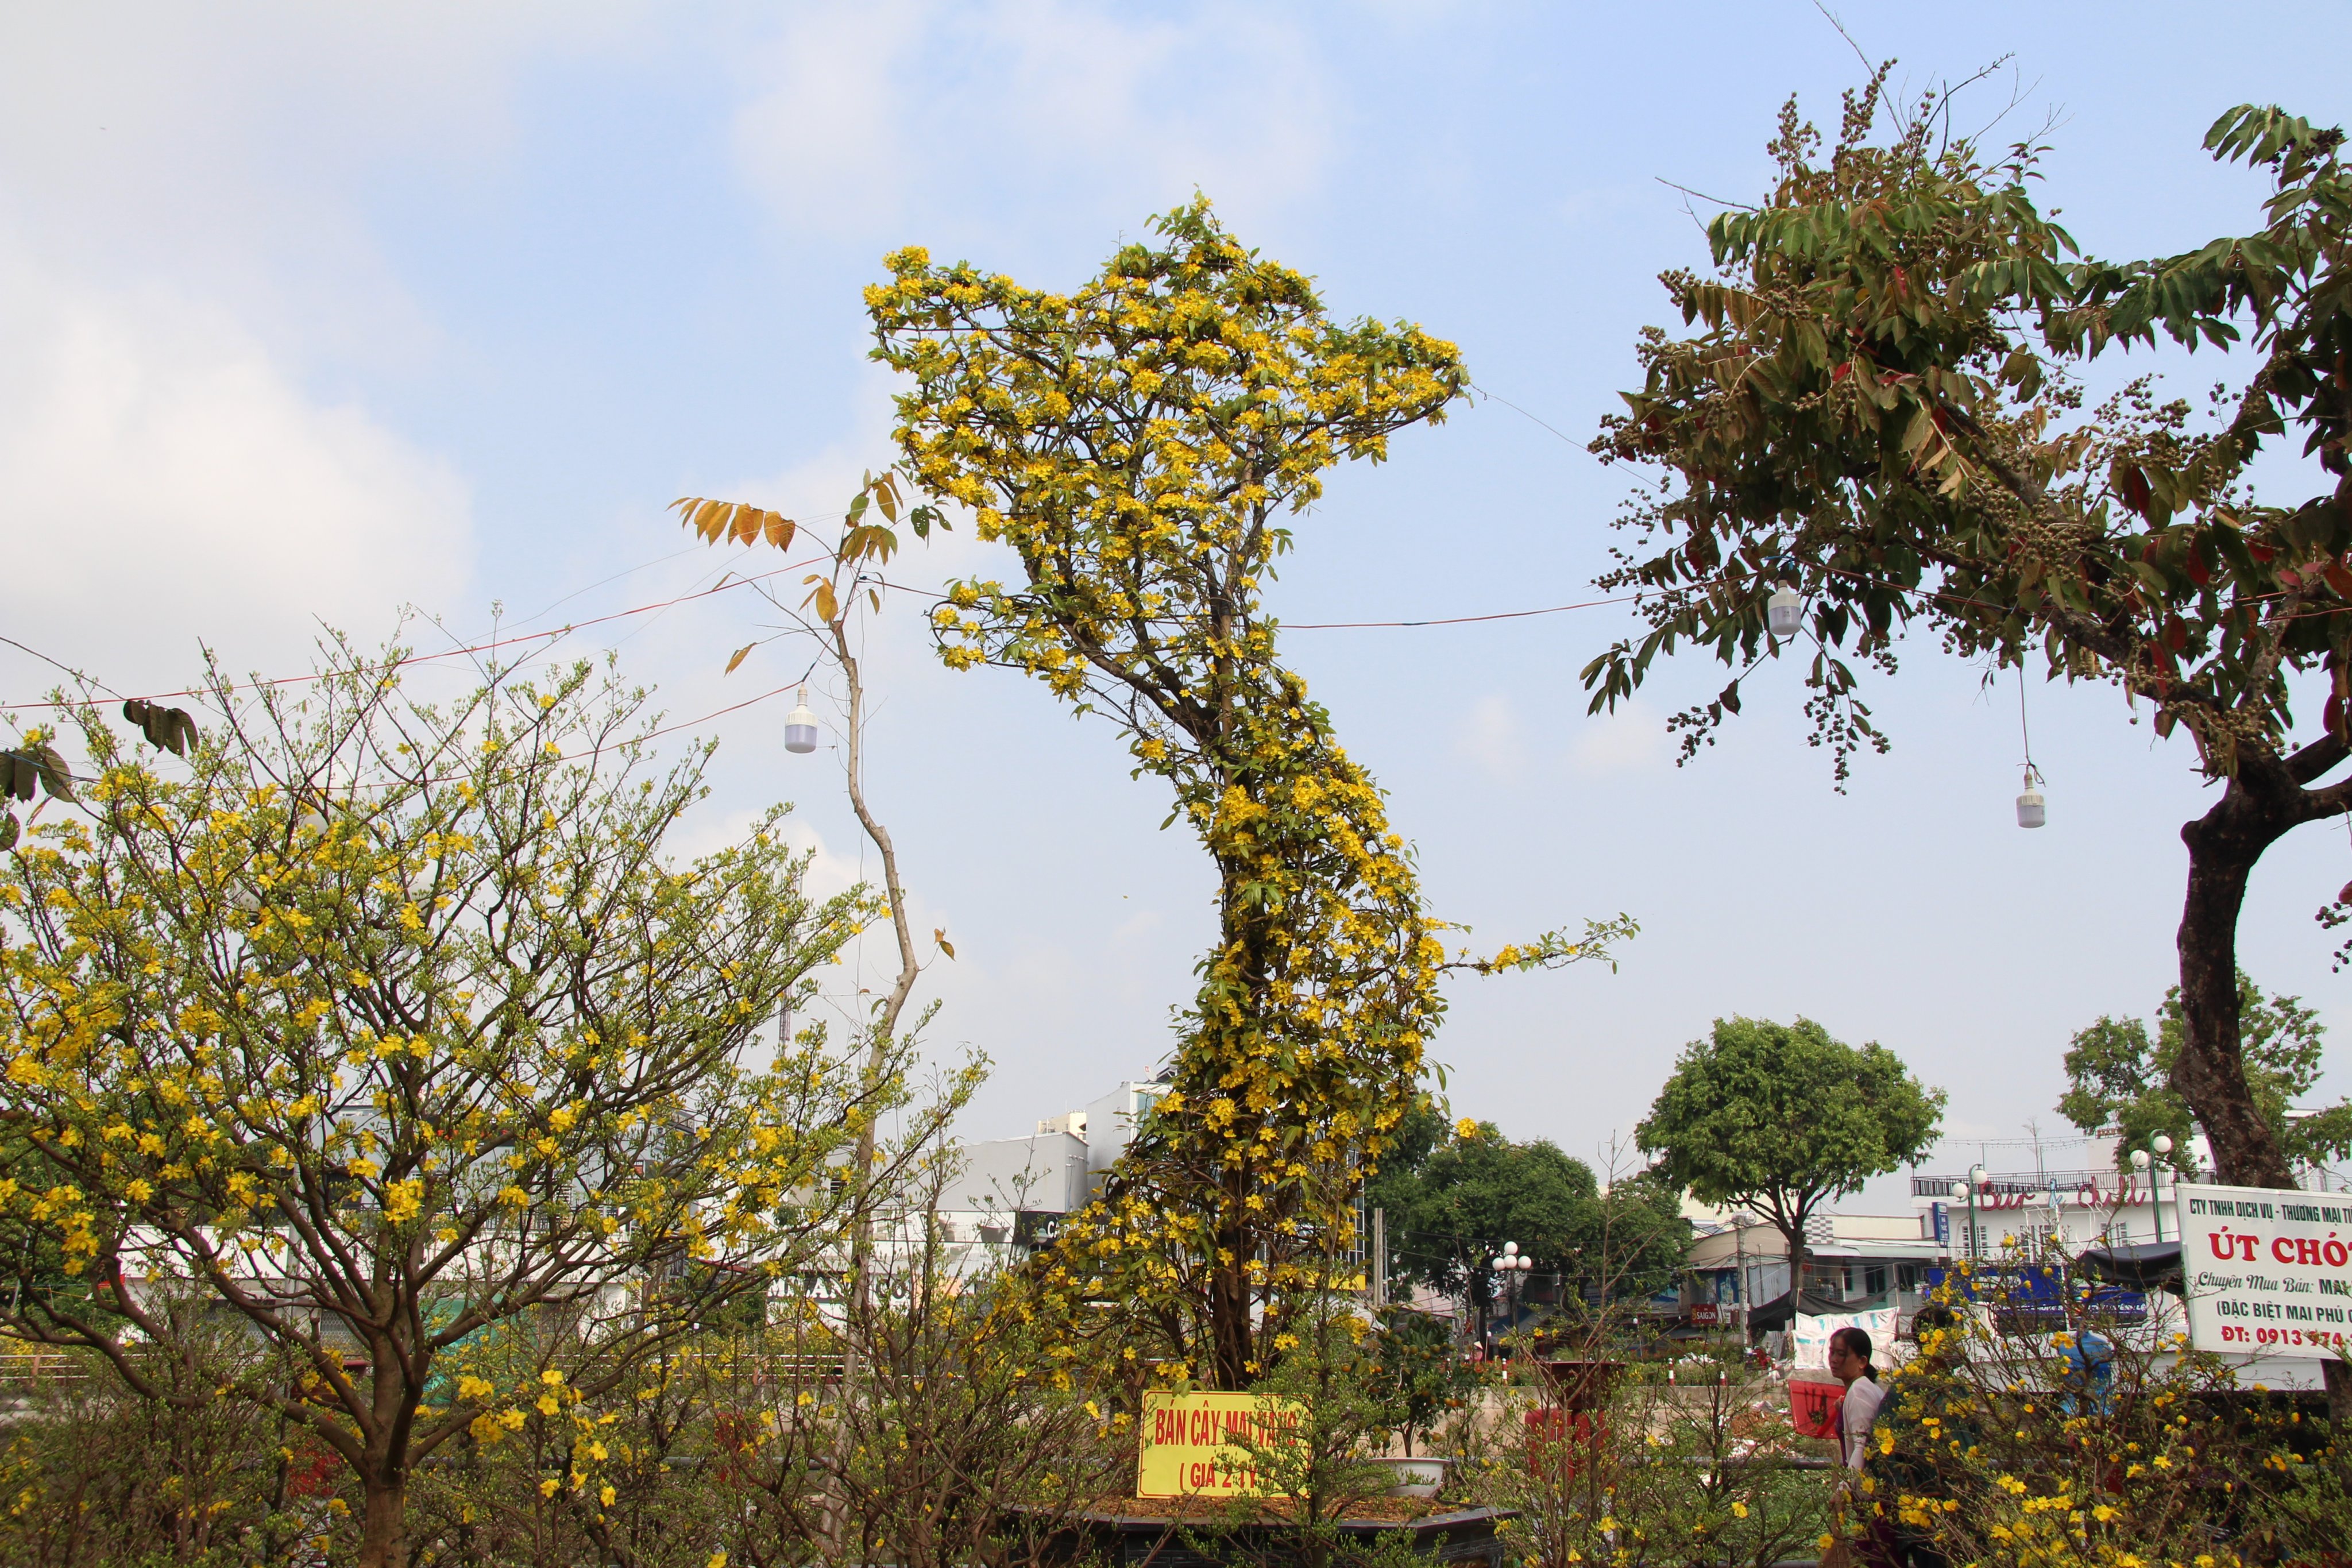 Doanh thu từ cây hoa mai vàng truyền thống ở Bình Định đạt kỷ lục  Thị  trường  Vietnam VietnamPlus